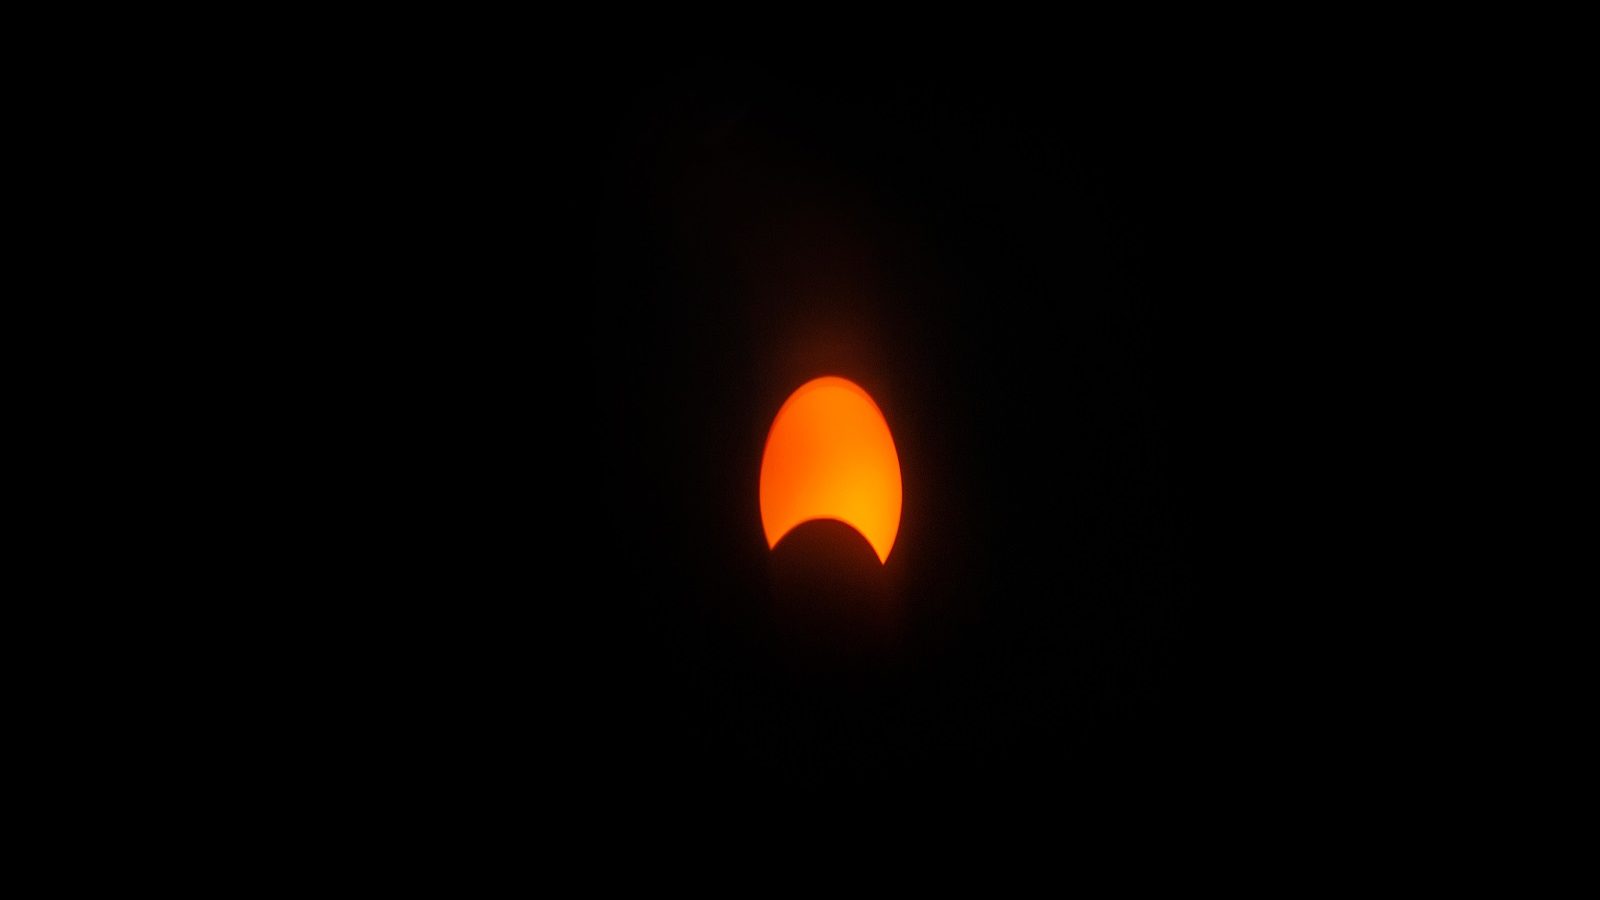 Surya Grahan 2021: 4 दिसंबर को है साल का आखिरी सूर्य ग्रहण, जानें कैसा होगा  इसका प्रभाव - surya grahan 2021 is on 4th december and it is the last solar  eclipse